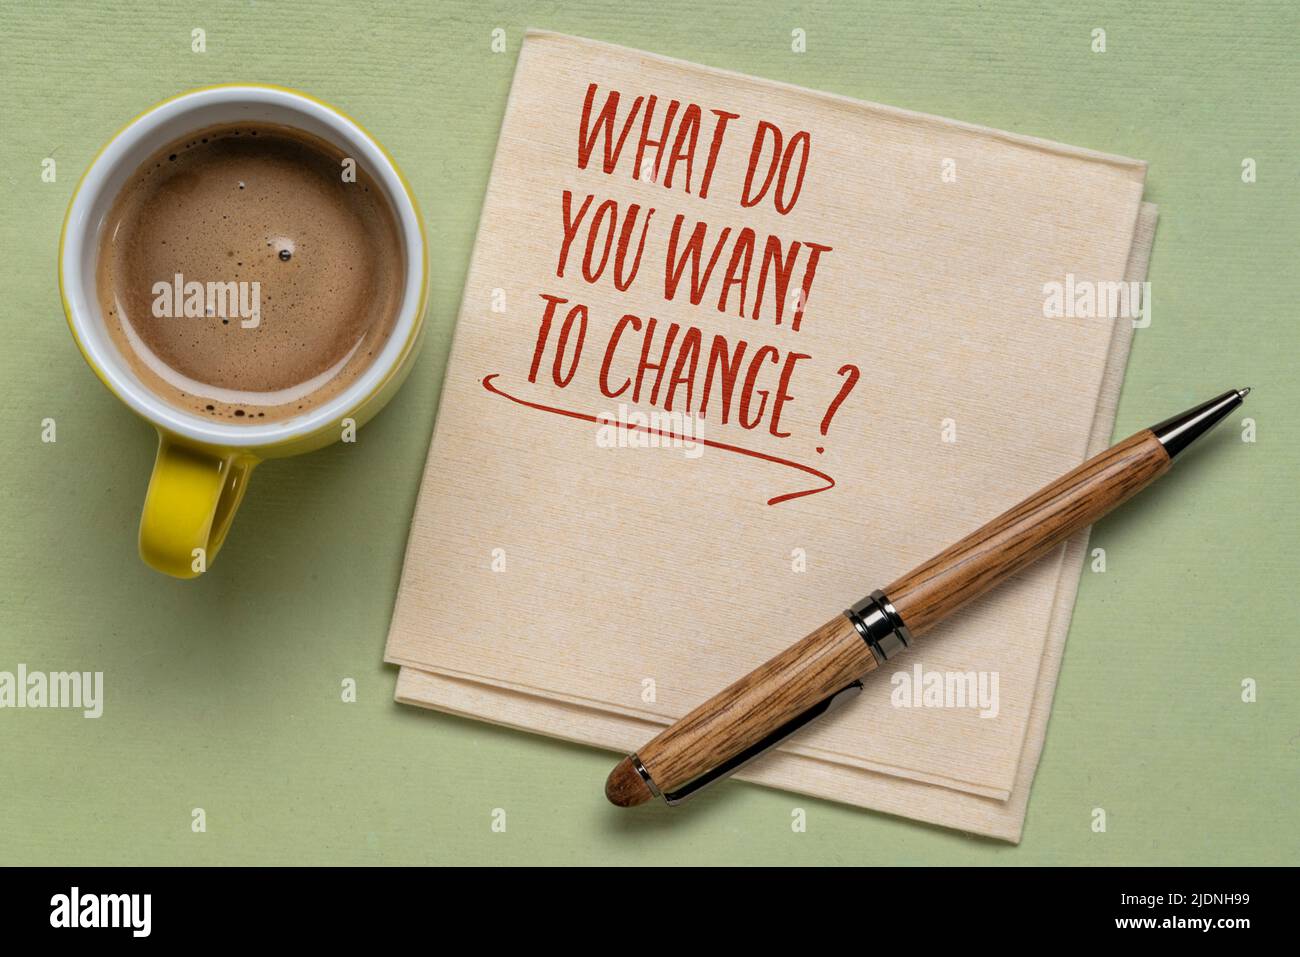 Was möchten Sie ändern? Handschrift auf Serviette mit einer Tasse Kaffee. Business, Lifestyle und persönliches Entwicklungskonzept. Stockfoto